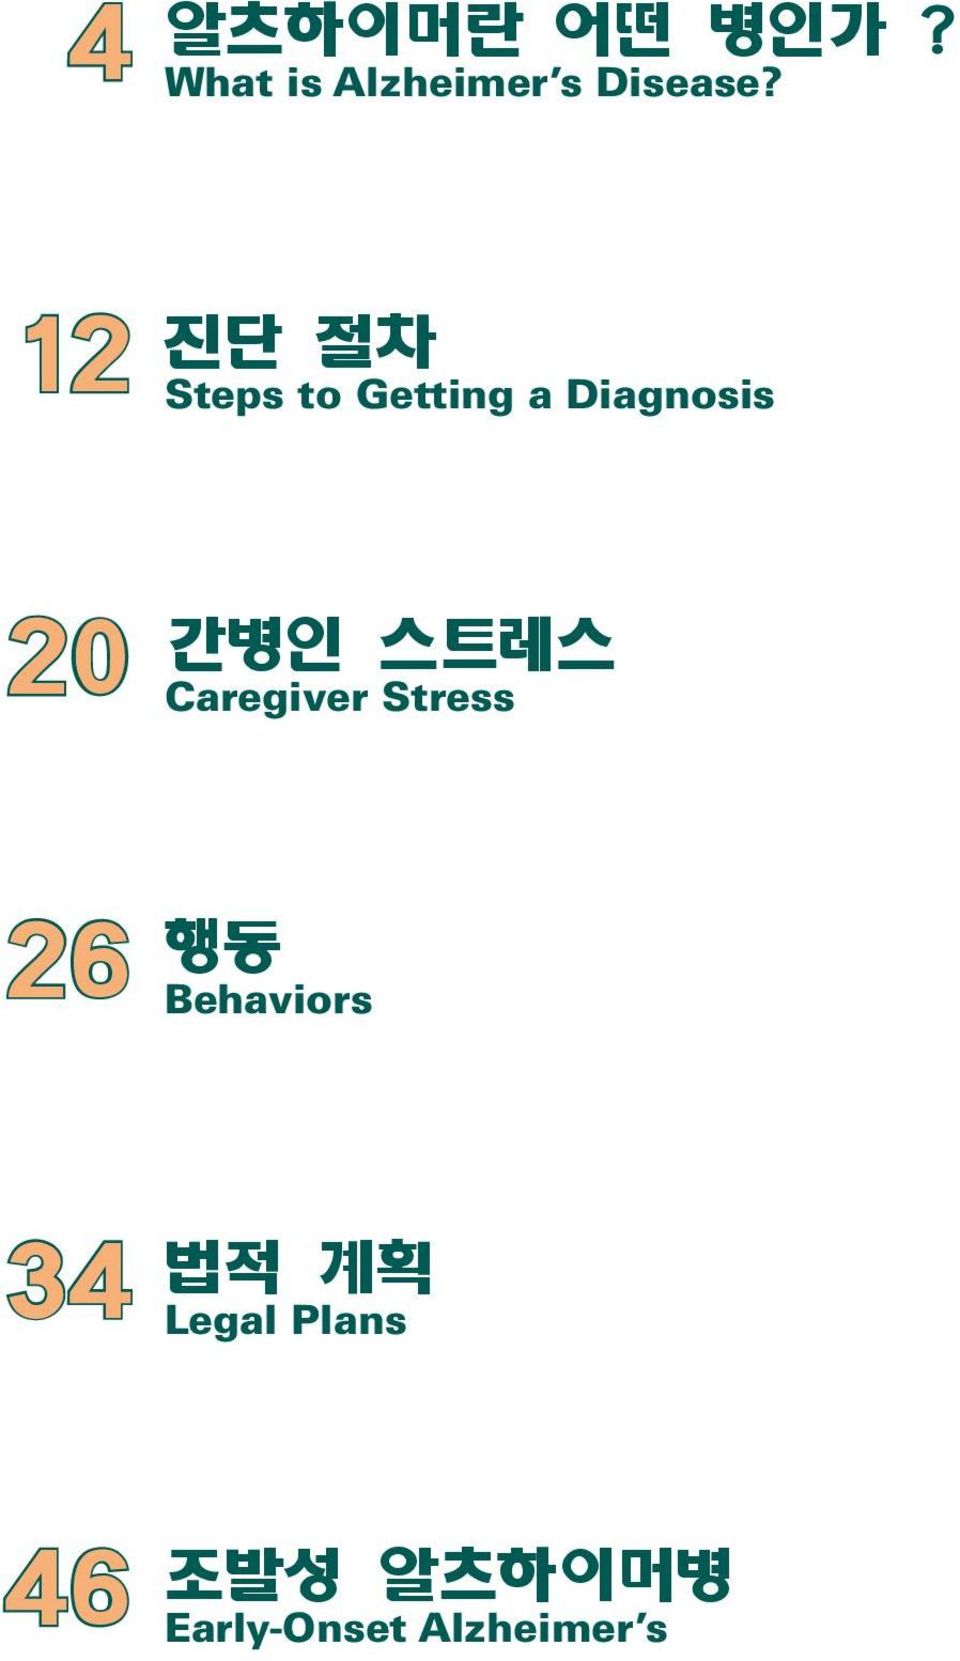 스트레스 Caregiver Stress 26 행동 Behaviors 34 법적 계획